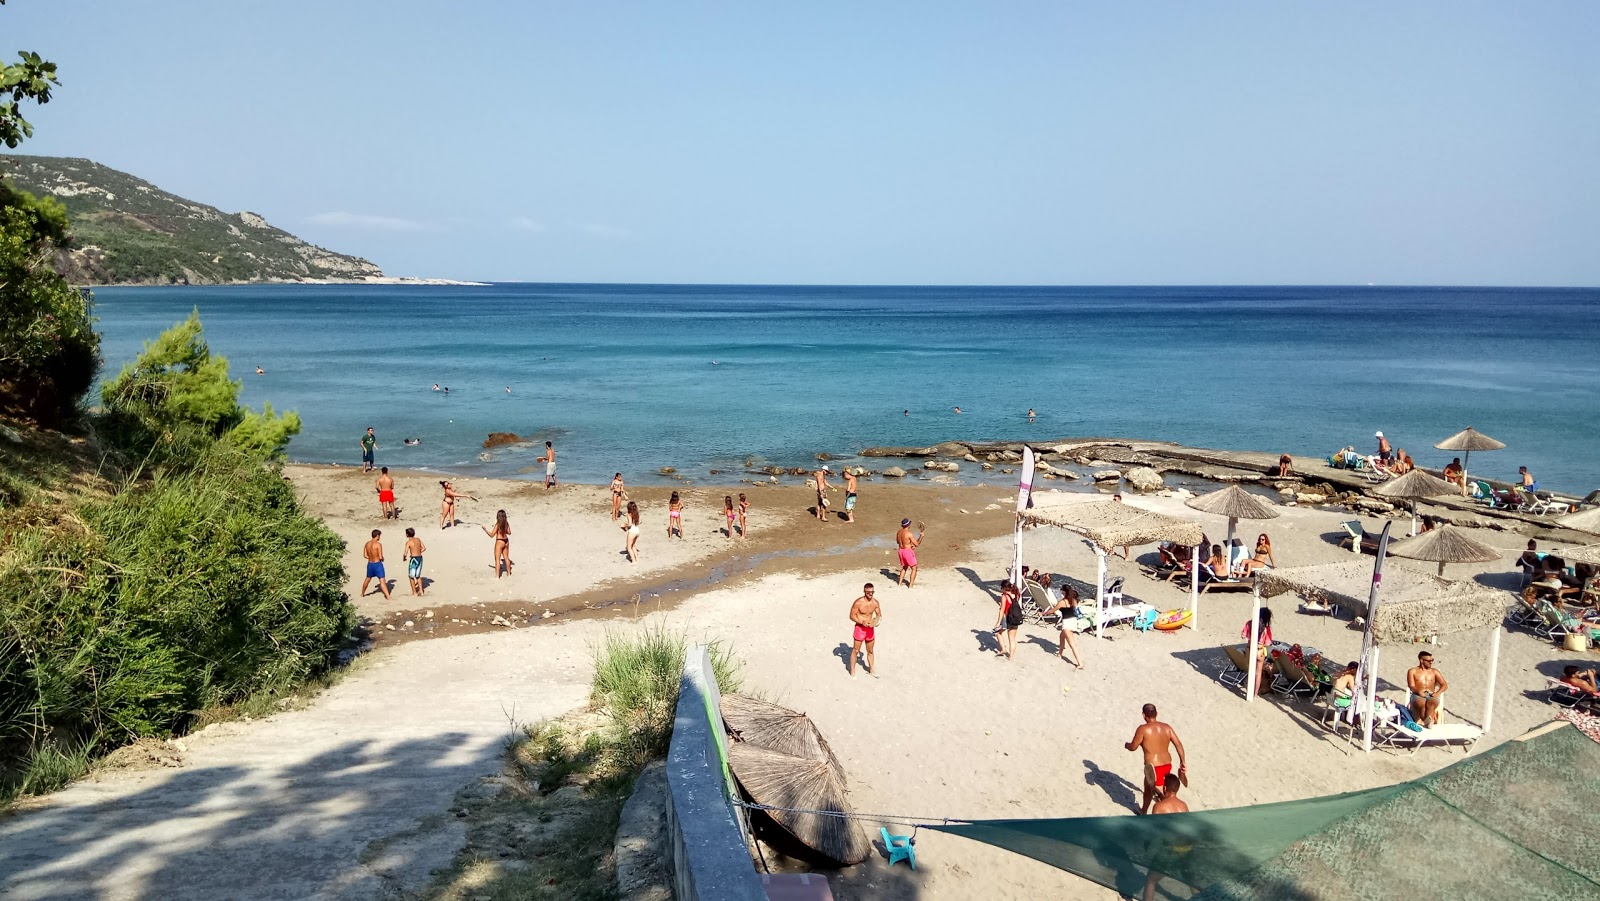 Foto di Soutsini beach con molto pulito livello di pulizia